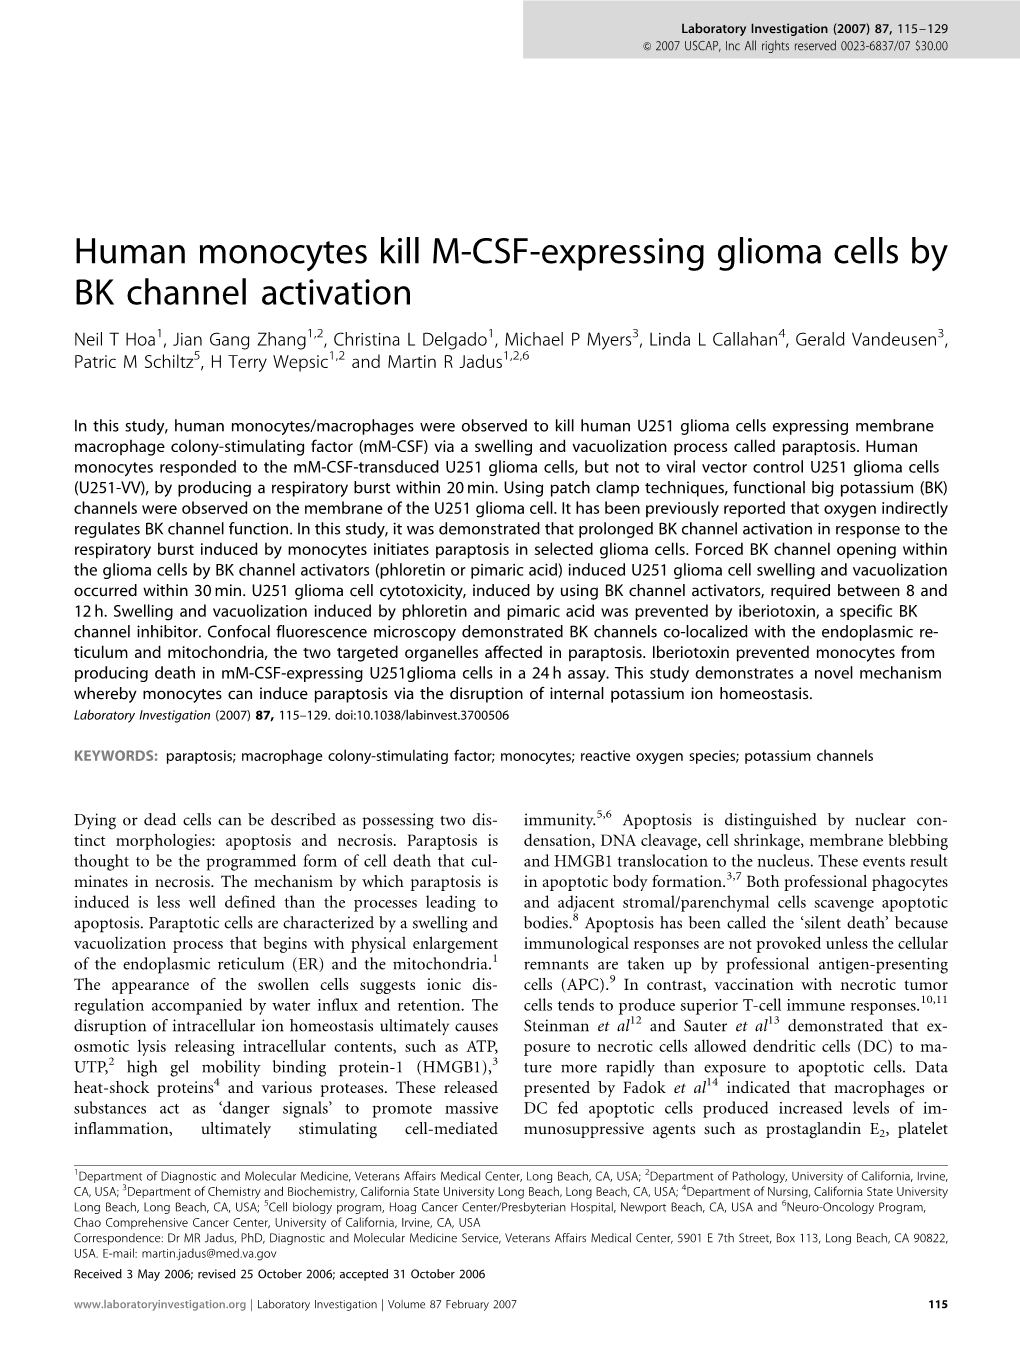 Human Monocytes Kill M-CSF-Expressing Glioma Cells By